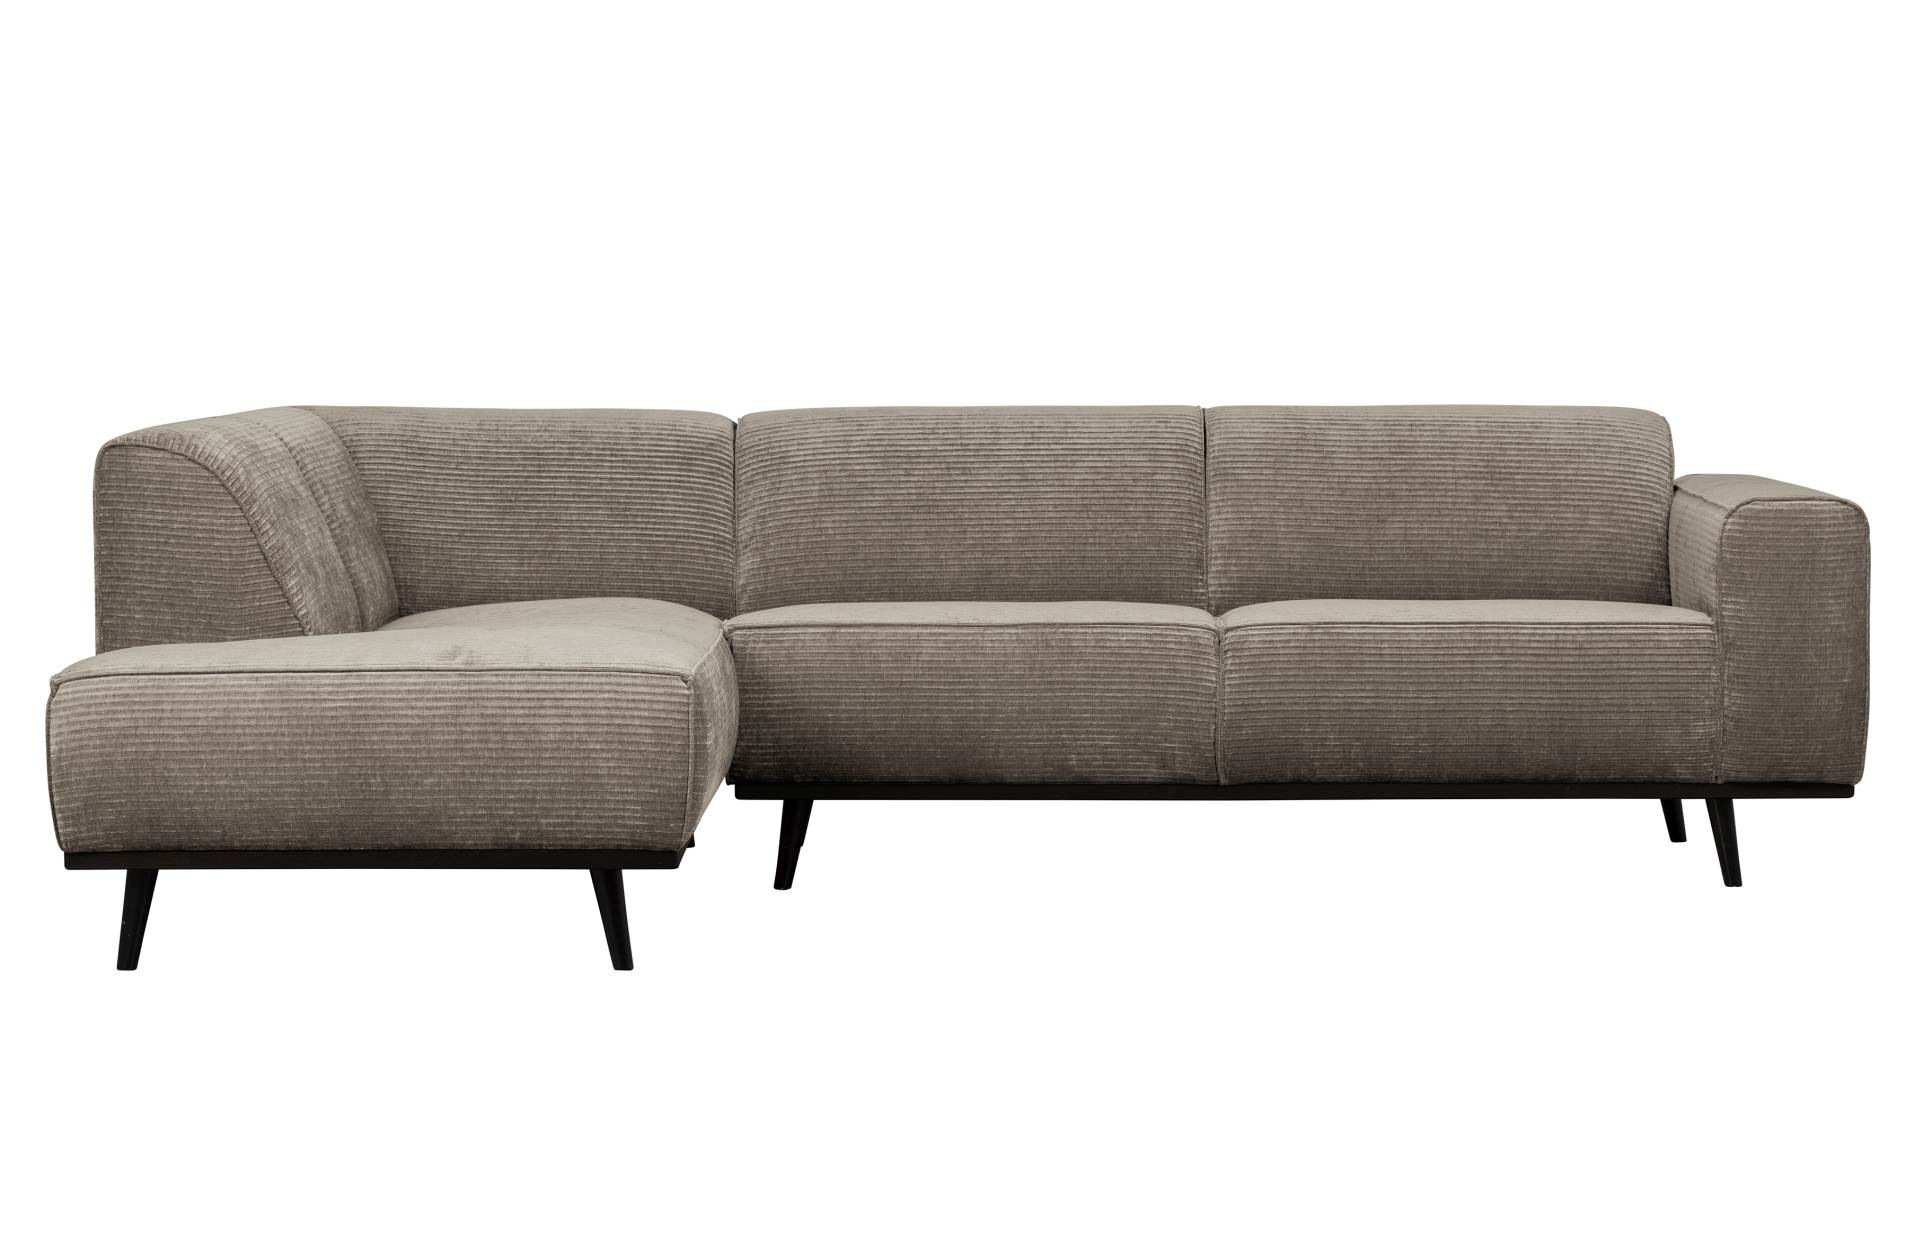 Das Ecksofa Statement überzeugt mit seinem modernen Design. Gefertigt wurde es aus gewebten Jacquard, welches einen Beige Farbton besitzen. Das Gestell ist aus Birkenholz und hat eine schwarze Farbe. Das Sofa hat eine Breite von 274 cm.